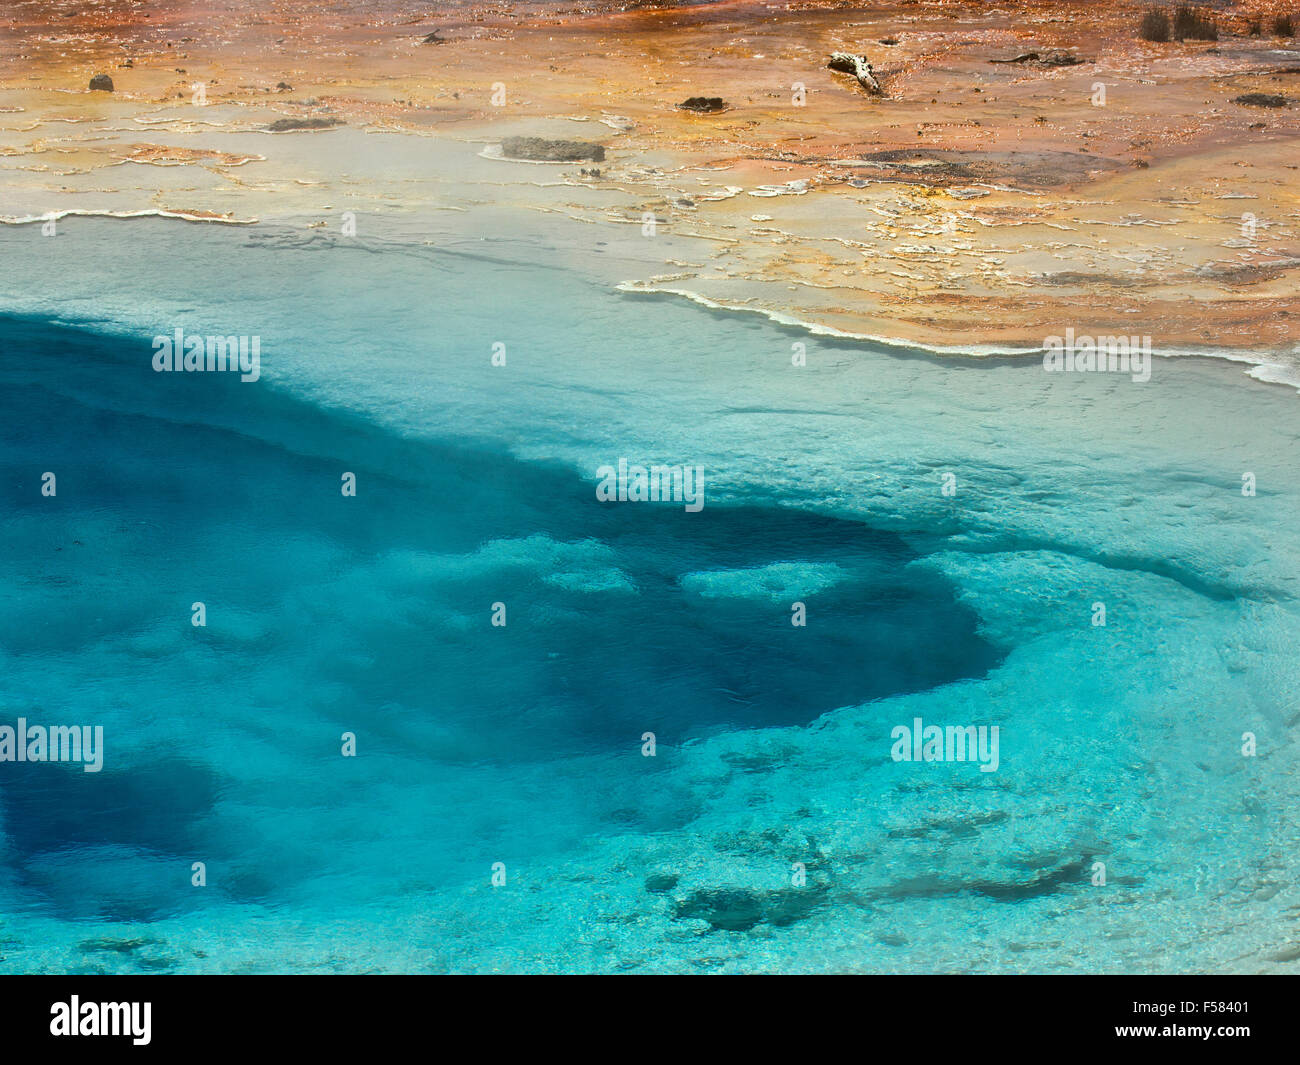 Blaue Feder Geysir, Yellowstone-Nationalpark. Lebendige kristallklare kontrastreiche Rost farbige mineralische Ablagerungen. Stockfoto